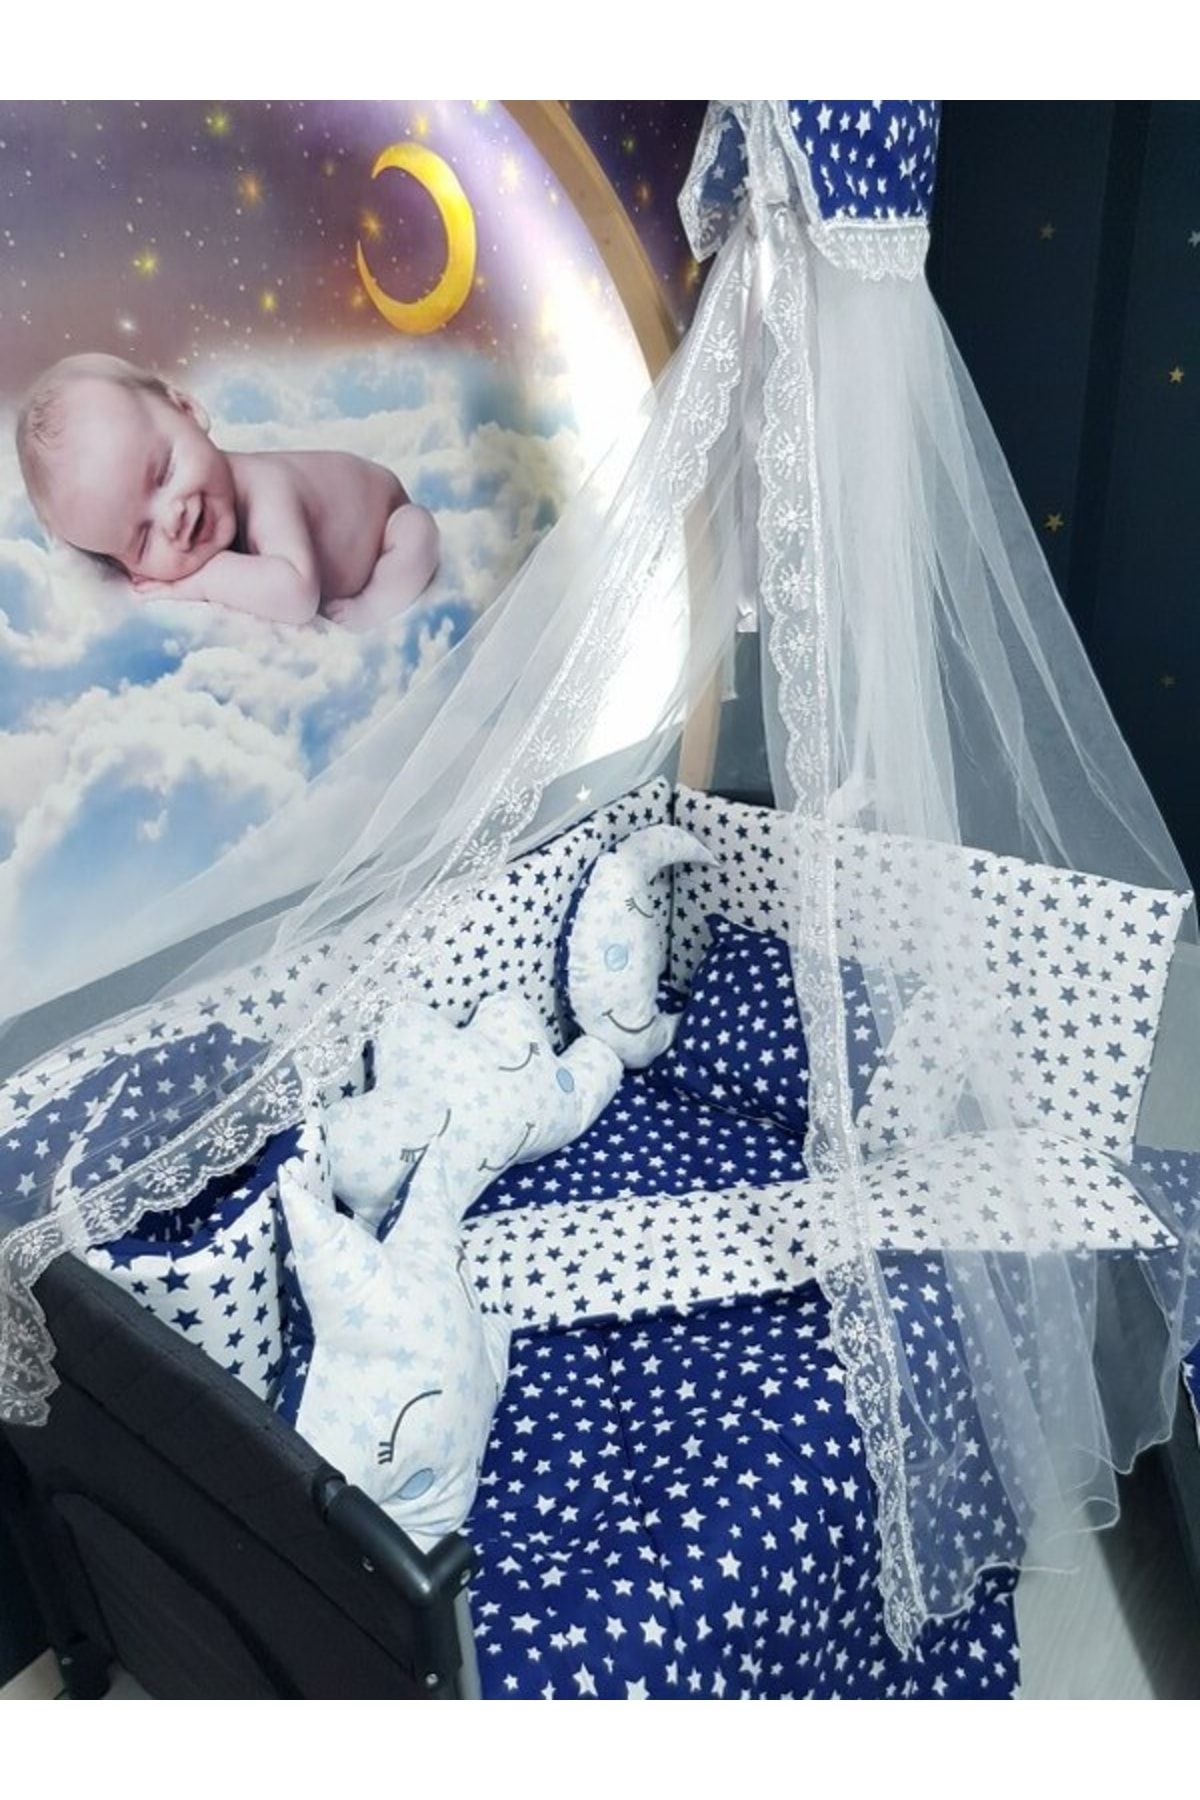 SOBEE 70x110 Bebek Uyku Seti Cibinlikli Yıldız Desen Park Beşiklere Uyumlu 12 Parça